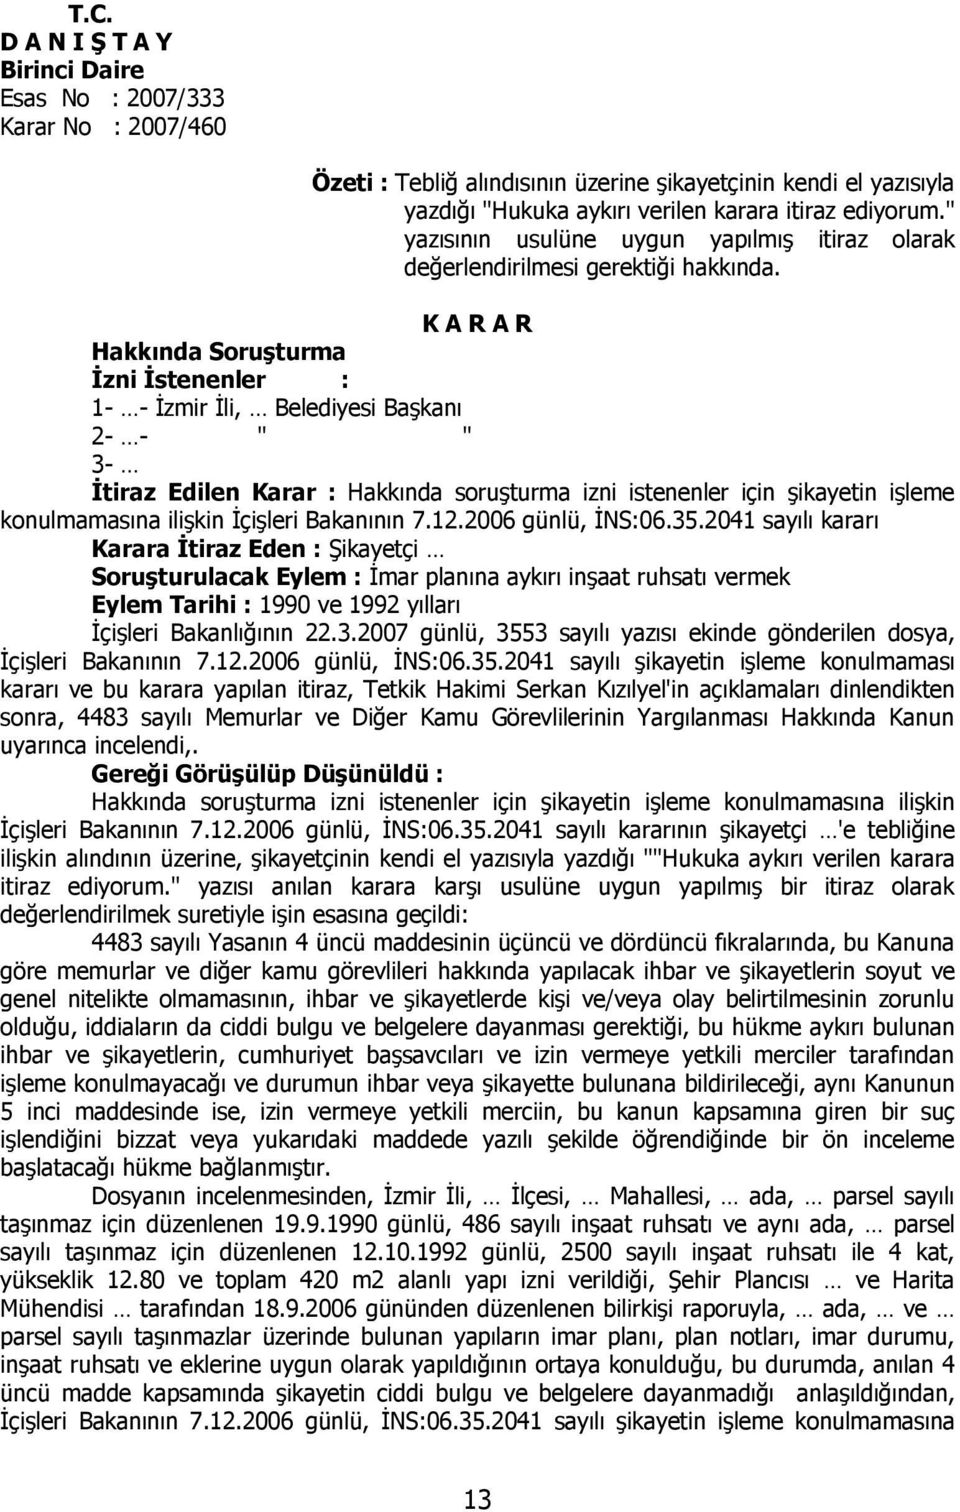 K A R A R Hakkında Soruşturma İzni İstenenler : 1- - İzmir İli, Belediyesi Başkanı 2- - " " 3- İtiraz Edilen Karar : Hakkında soruşturma izni istenenler için şikayetin işleme konulmamasına ilişkin